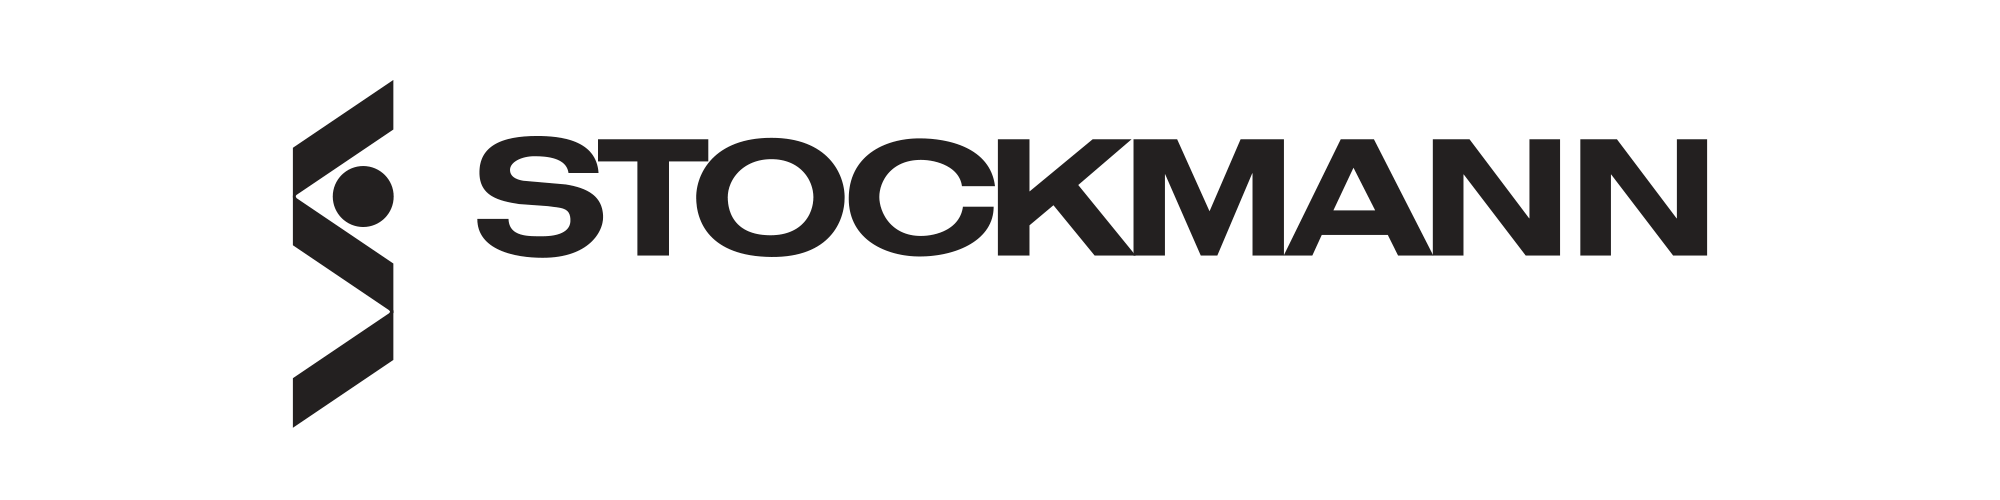 logo_stockmann.png